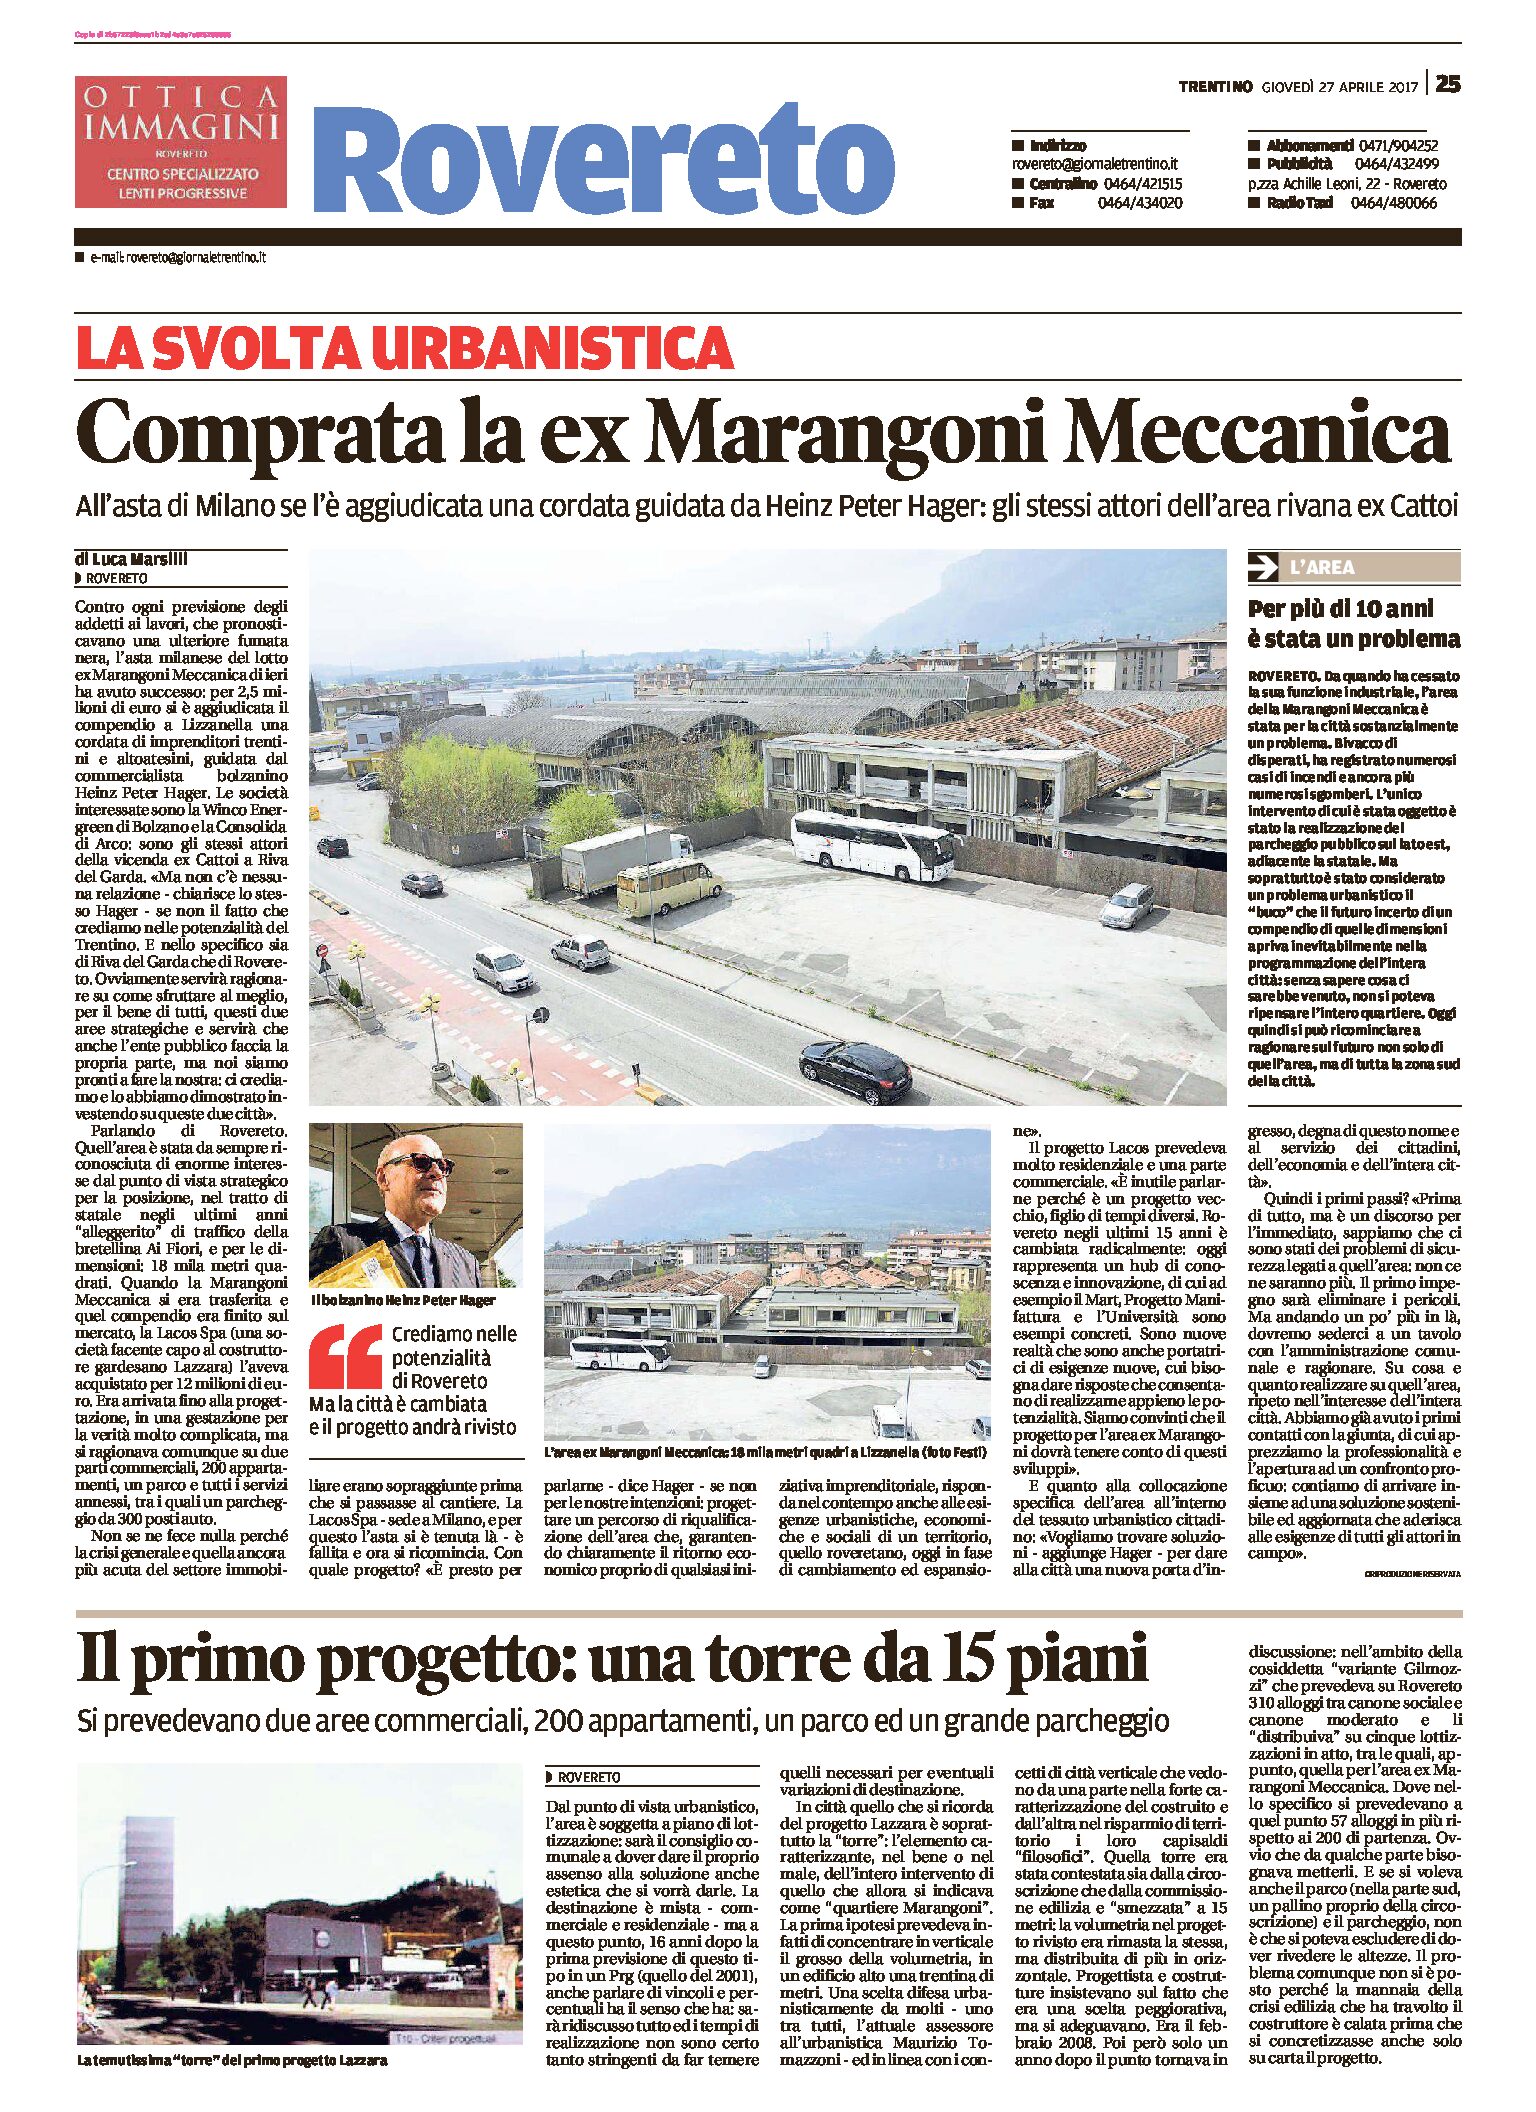 Rovereto: comprata la ex Marangoni Meccanica.